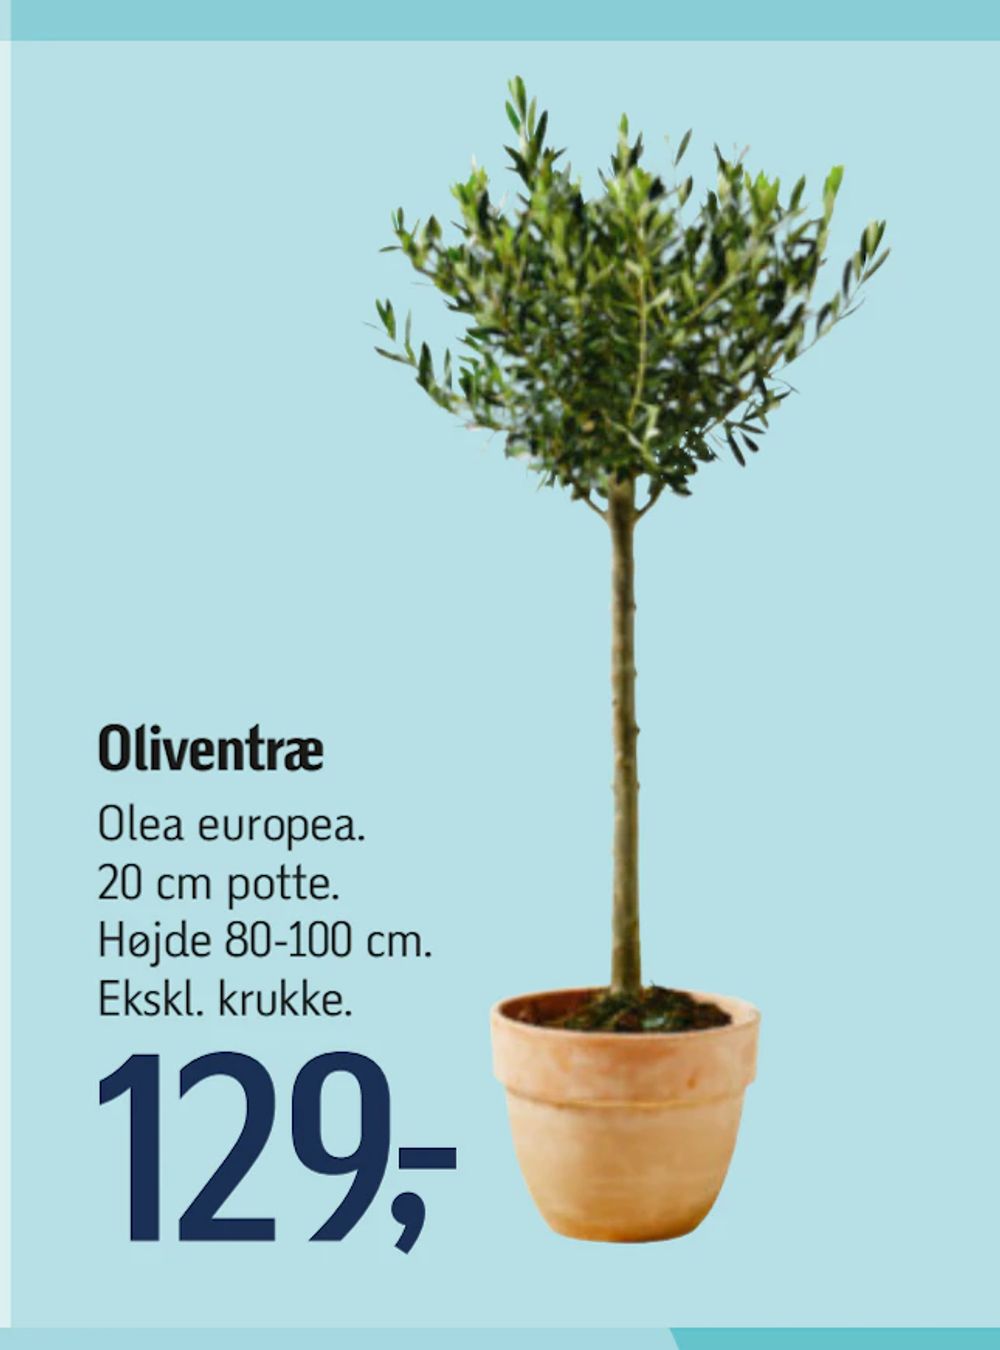 Tilbud på Oliventræ fra føtex til 129 kr.